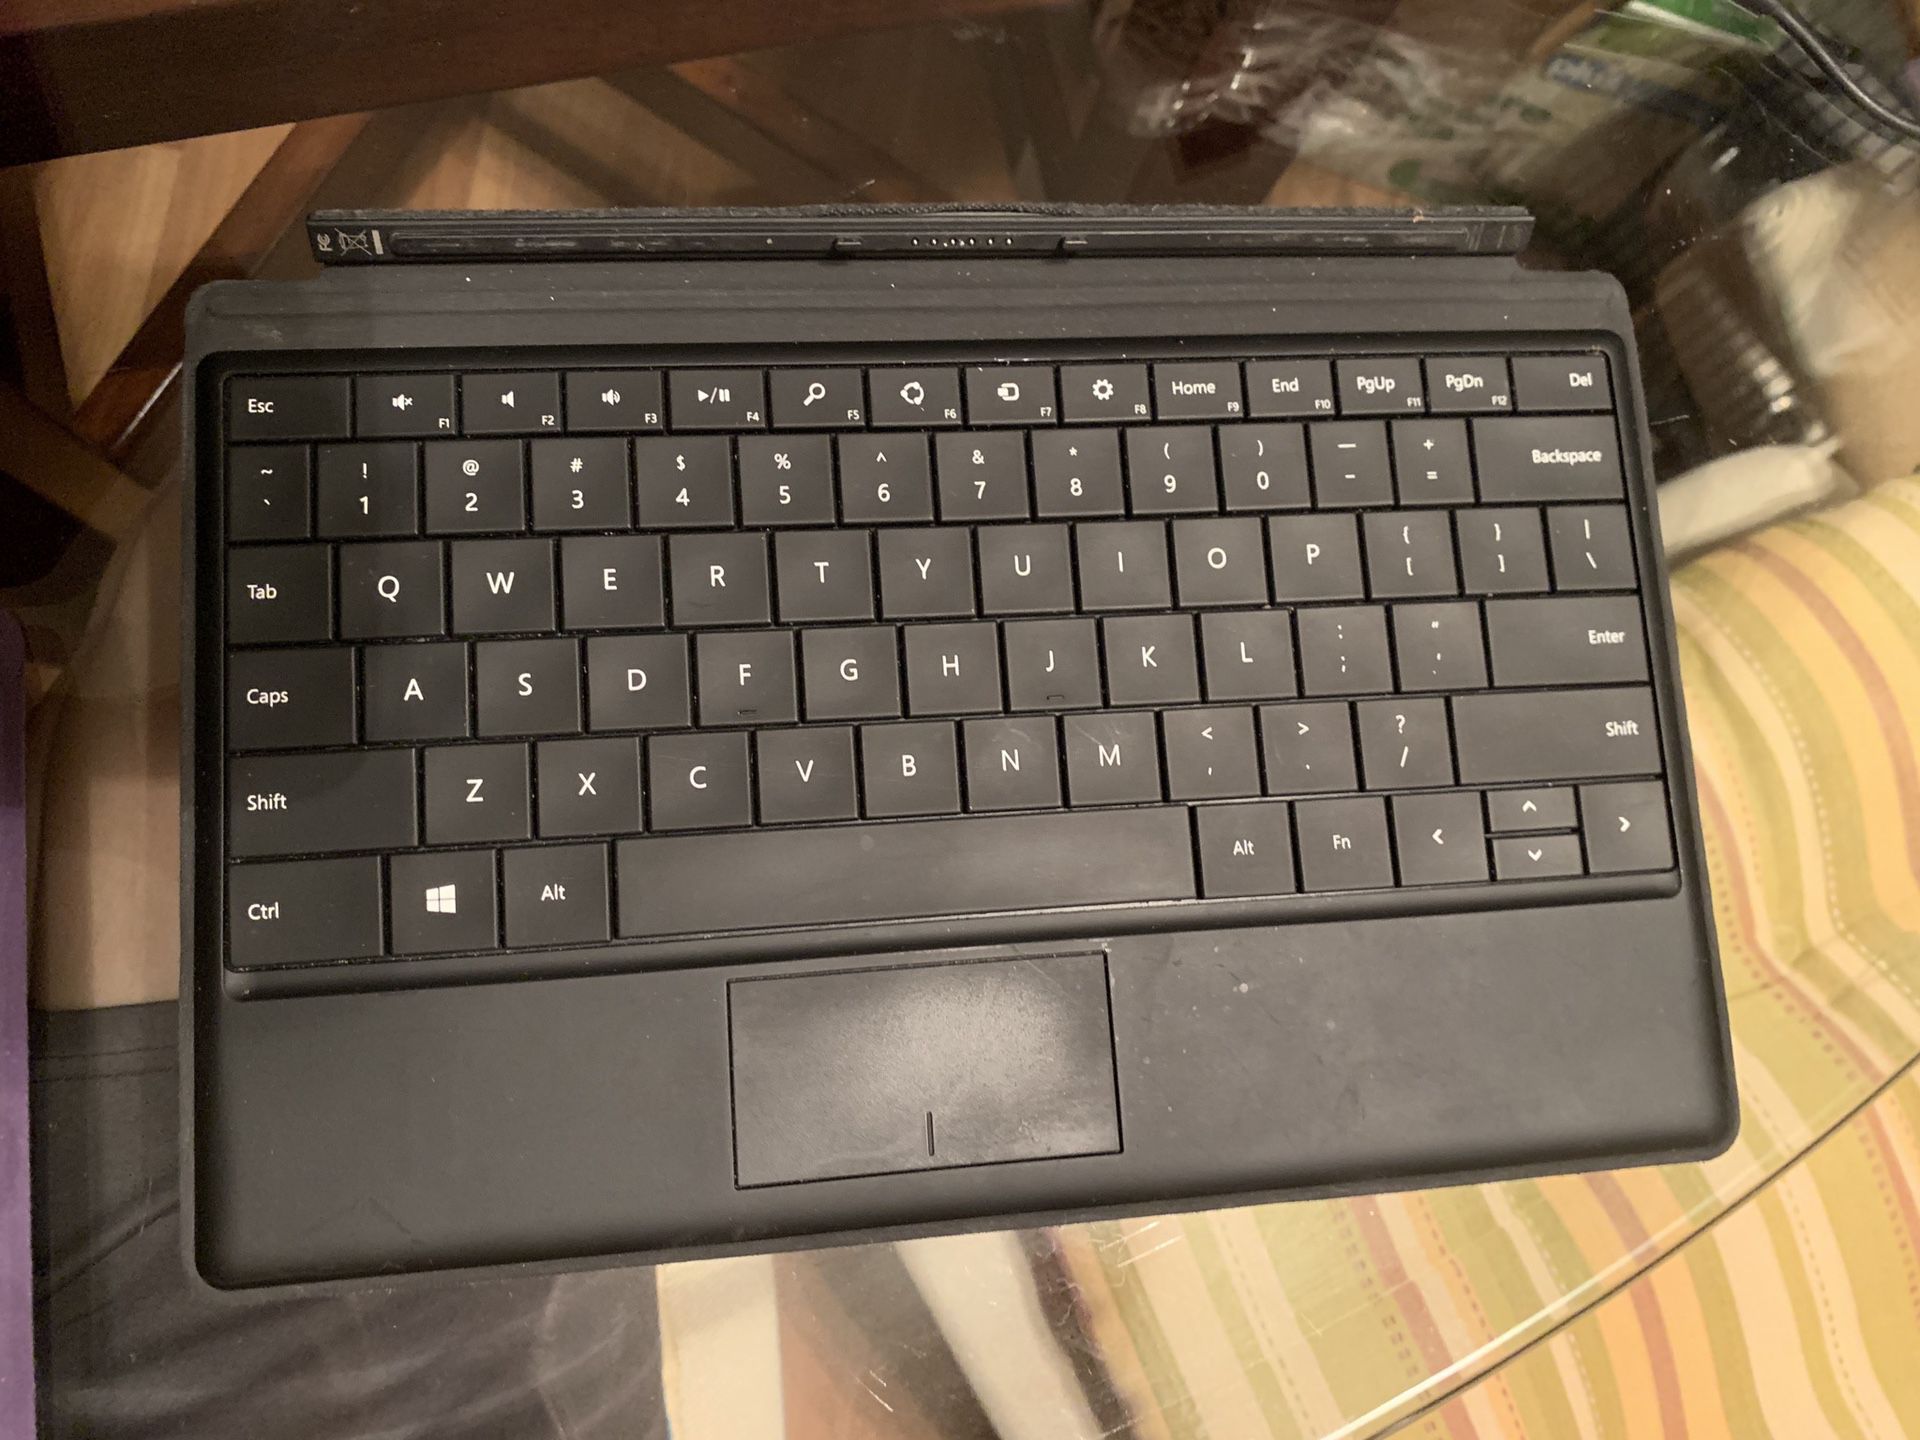 Surface keyboard